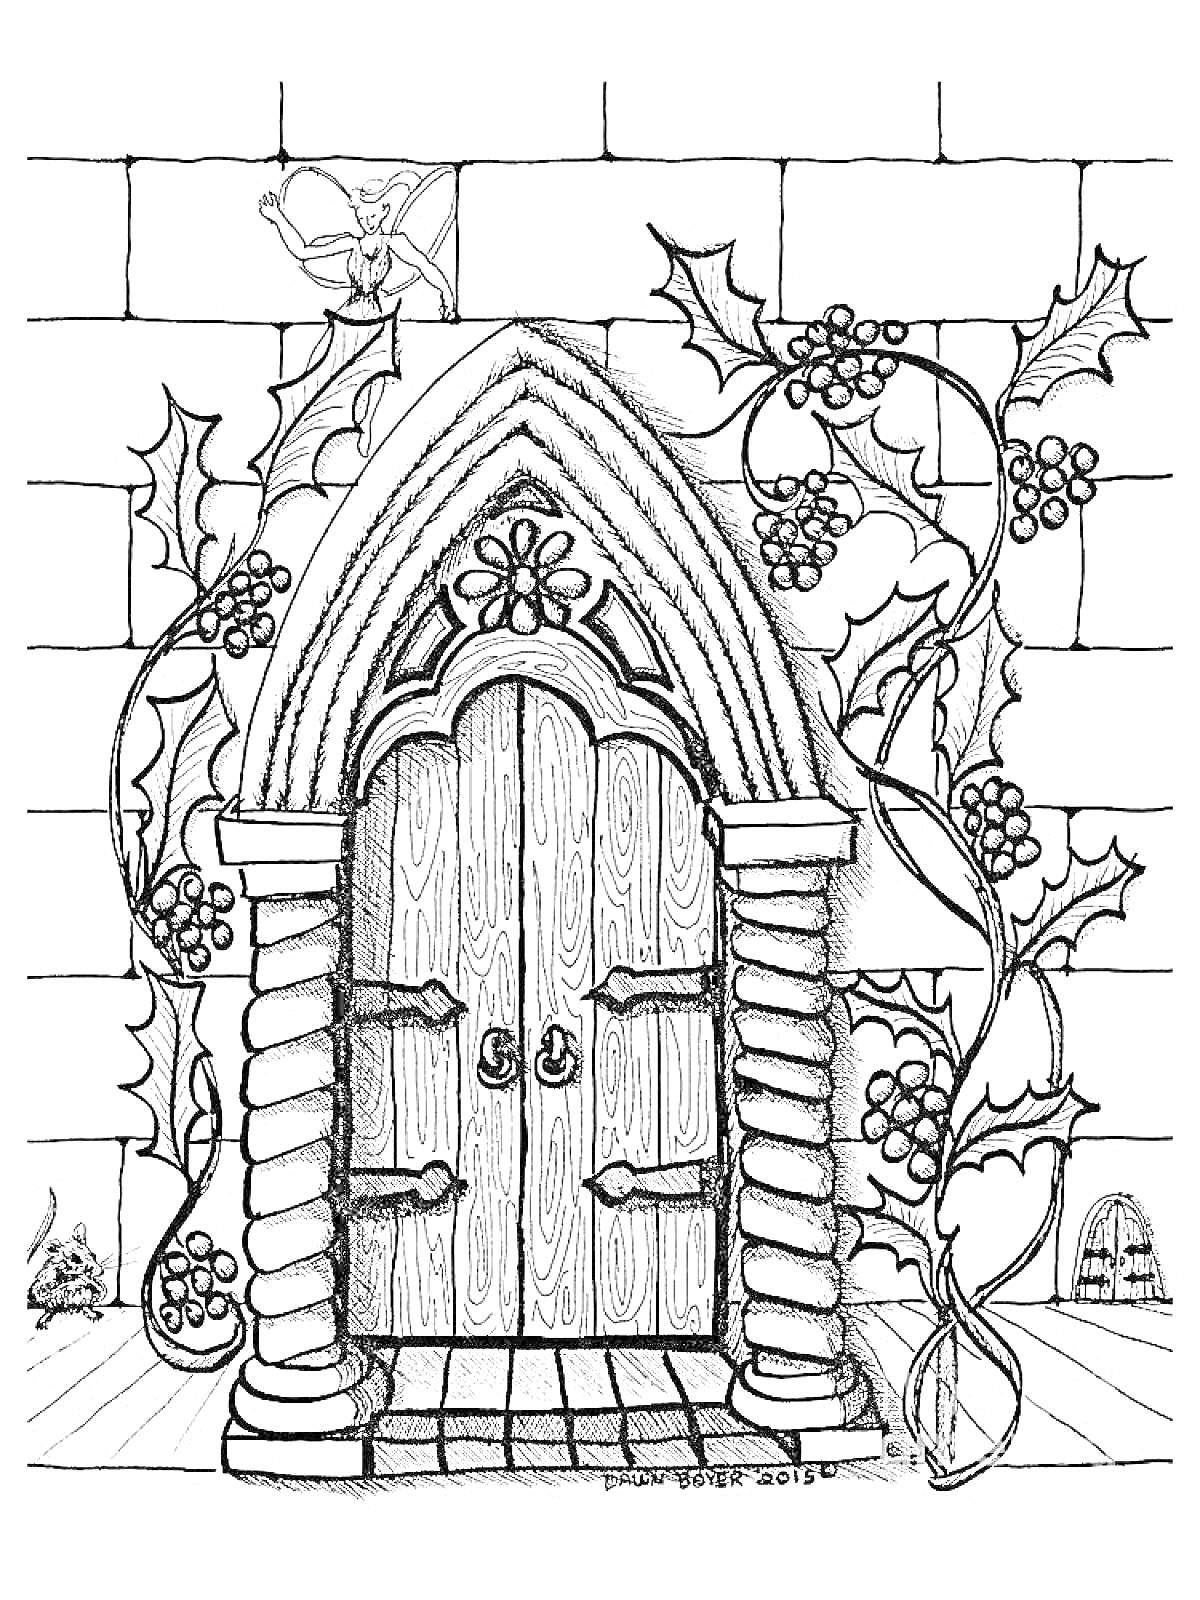 Дверь в готическом стиле с декоративной аркой и растительным орнаментом, обвитая виноградными лозами. Петух на крыше здания.